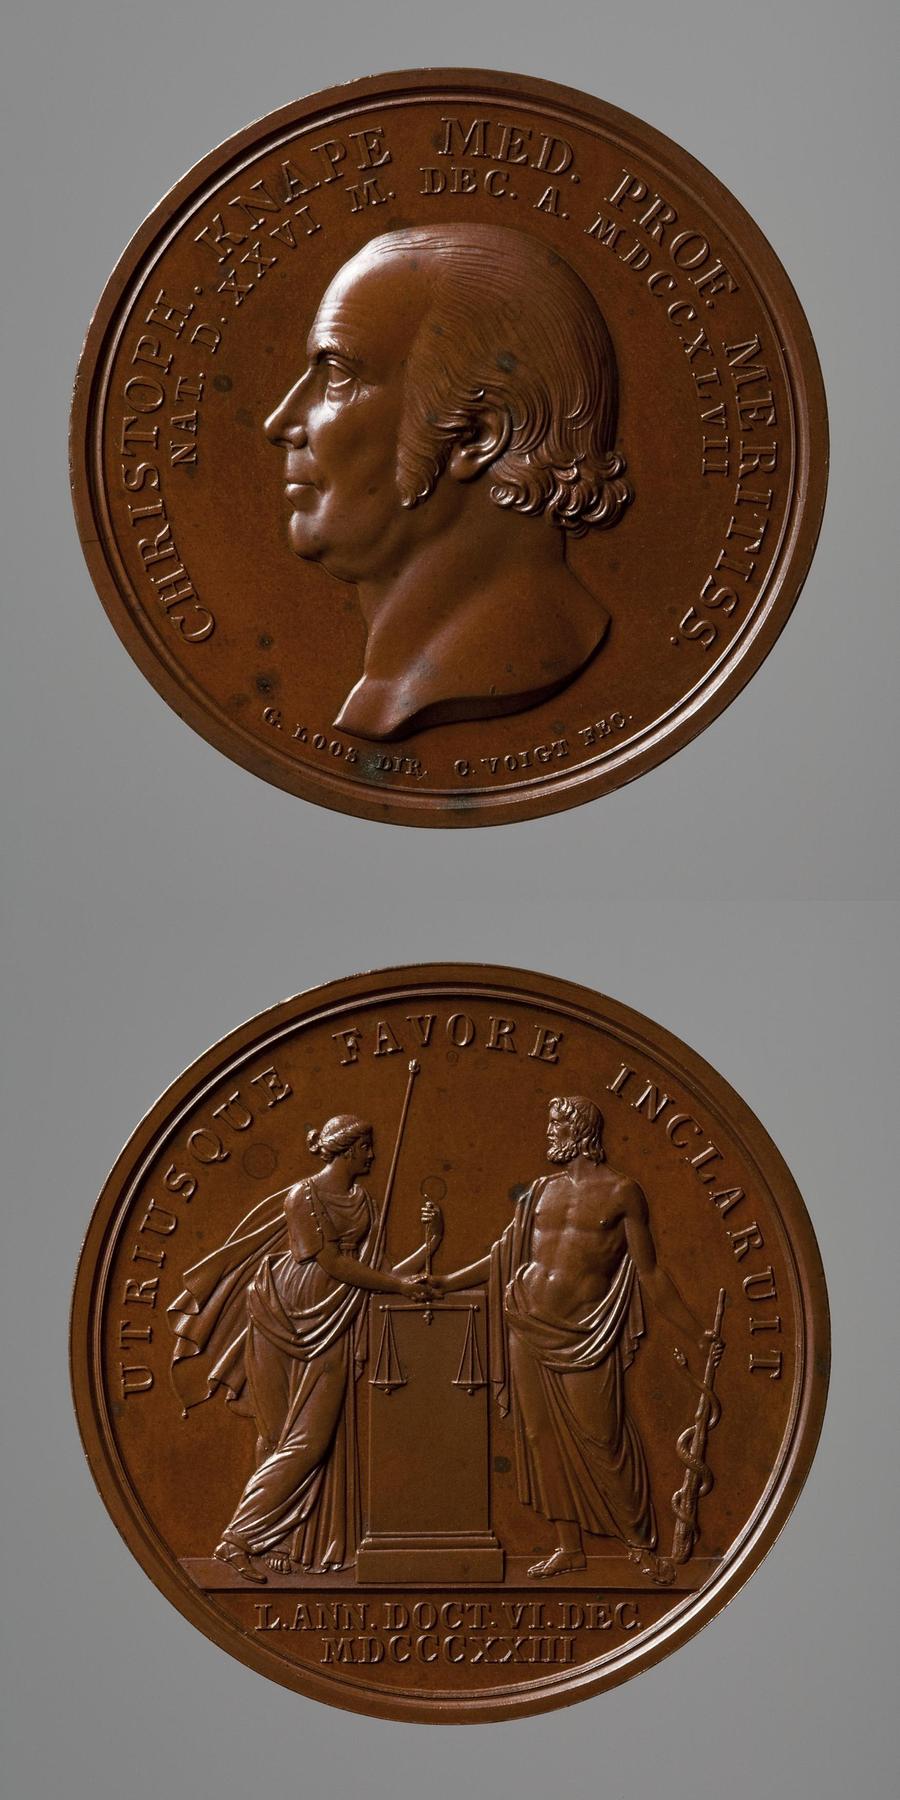 Medaljens forside: Lægen Christopher Knape. Medaljens bagside: Æskulap og Retfærdigheden, F118